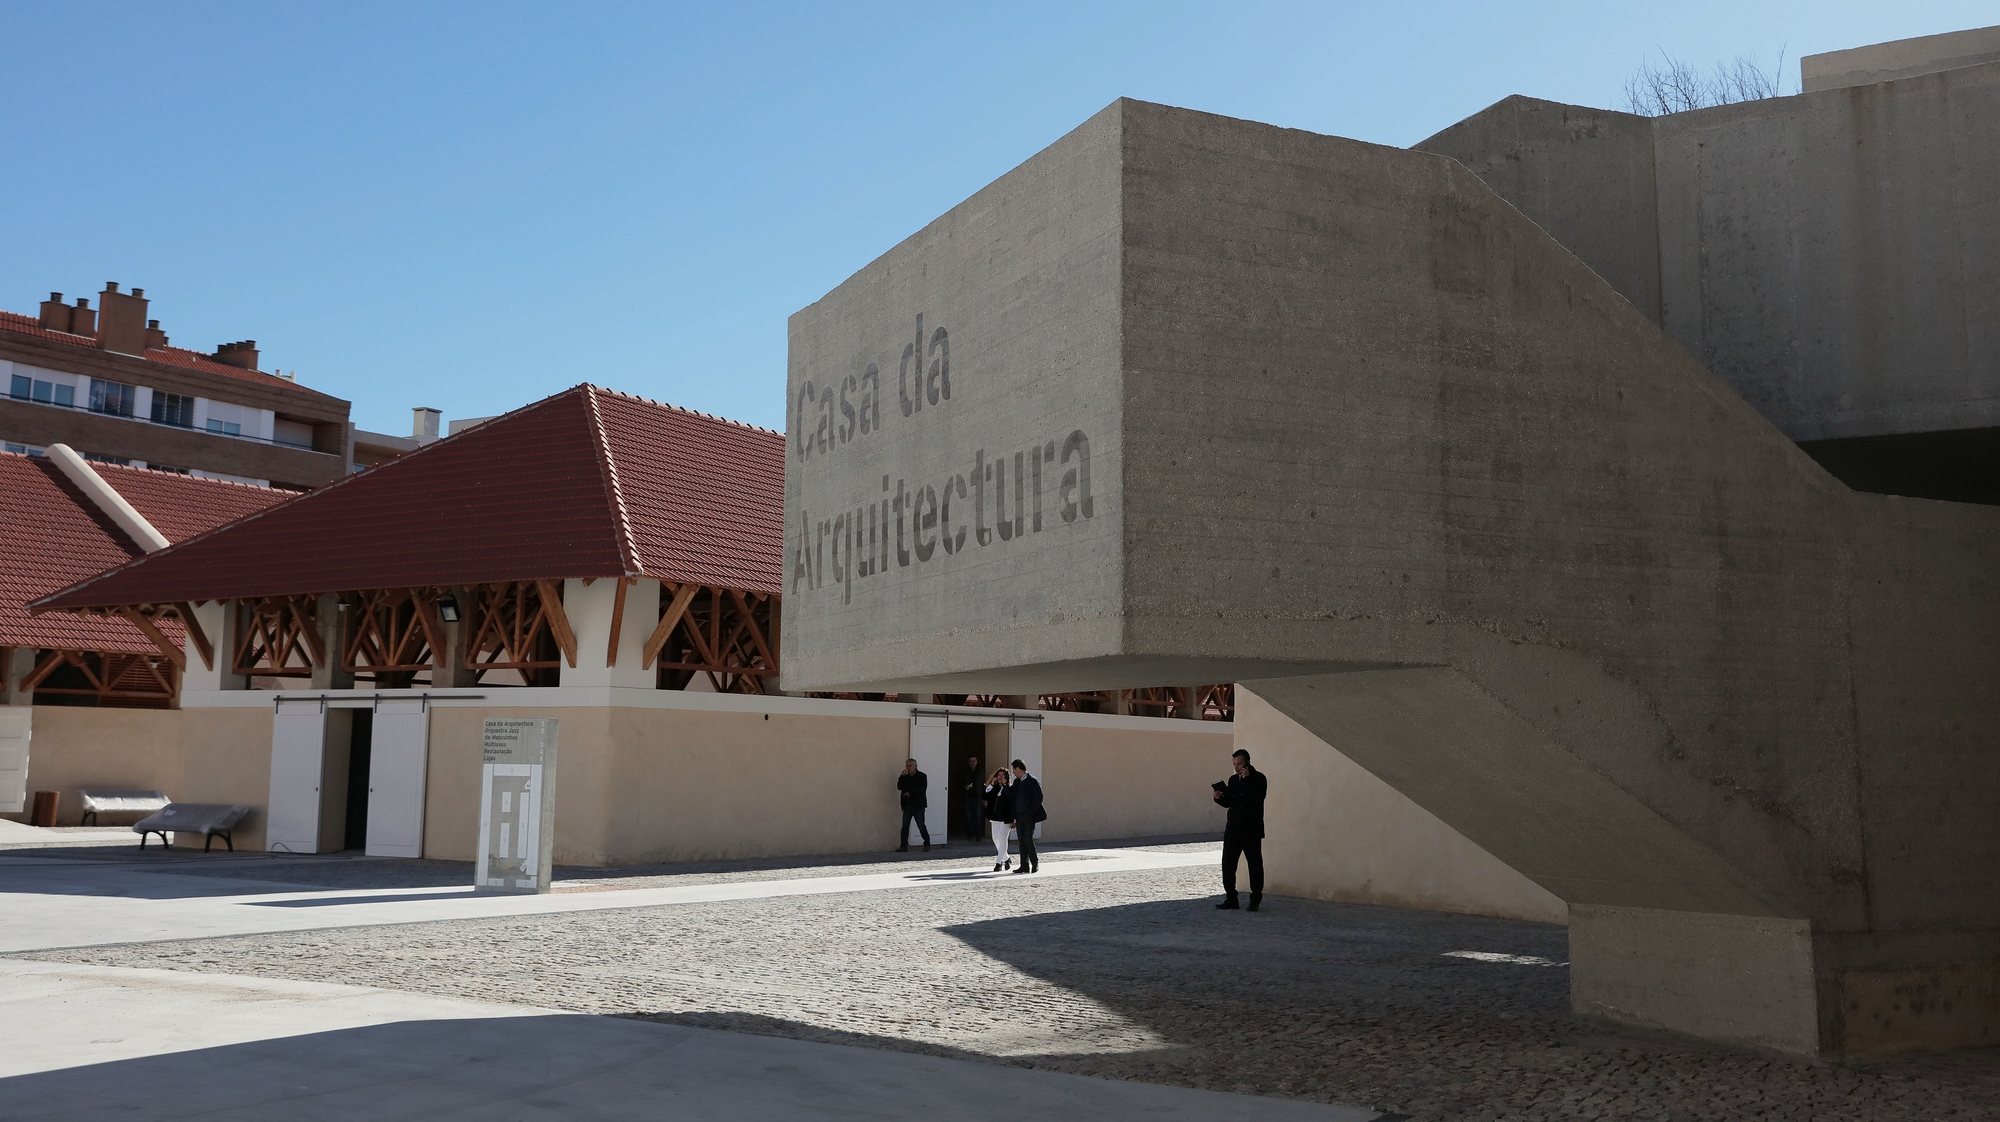 Pormenor da Casa da Arquitetura, em Matosinhos, 14 de novembro 2017. Criada em 2007, a Casa da Arquitetura, é uma entidade cultural sem fins lucrativos e que cria e programa conteúdos para a divulgação da arquitetura junto da sociedade. MANUEL ARAÚJO/LUSA